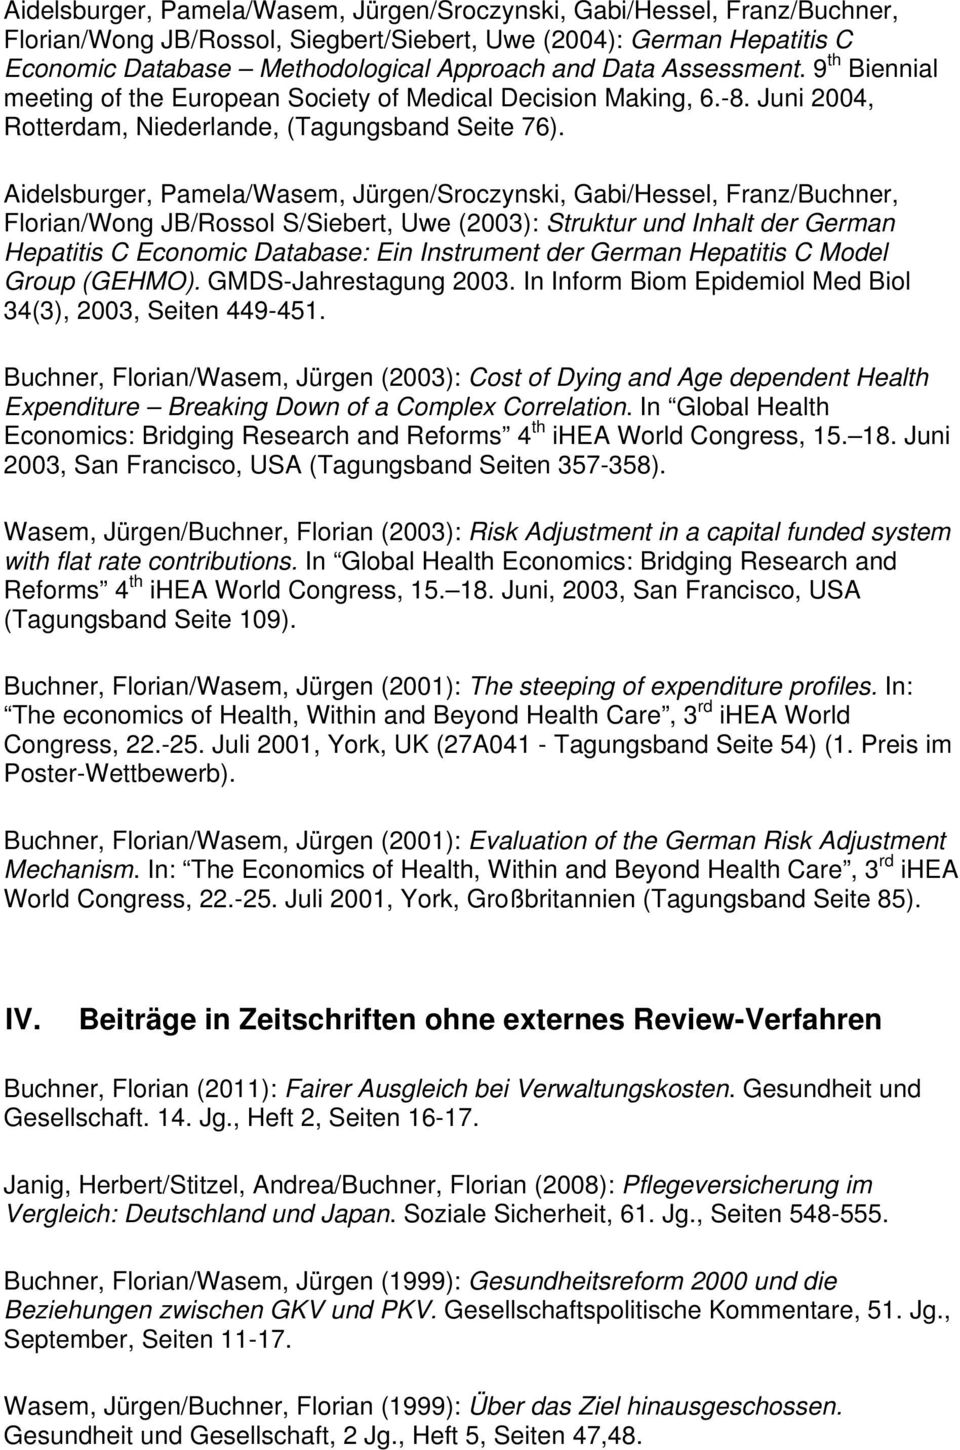 Aidelsburger, Pamela/Wasem, Jürgen/Sroczynski, Gabi/Hessel, Franz/Buchner, Florian/Wong JB/Rossol S/Siebert, Uwe (2003): Struktur und Inhalt der German Hepatitis C Economic Database: Ein Instrument